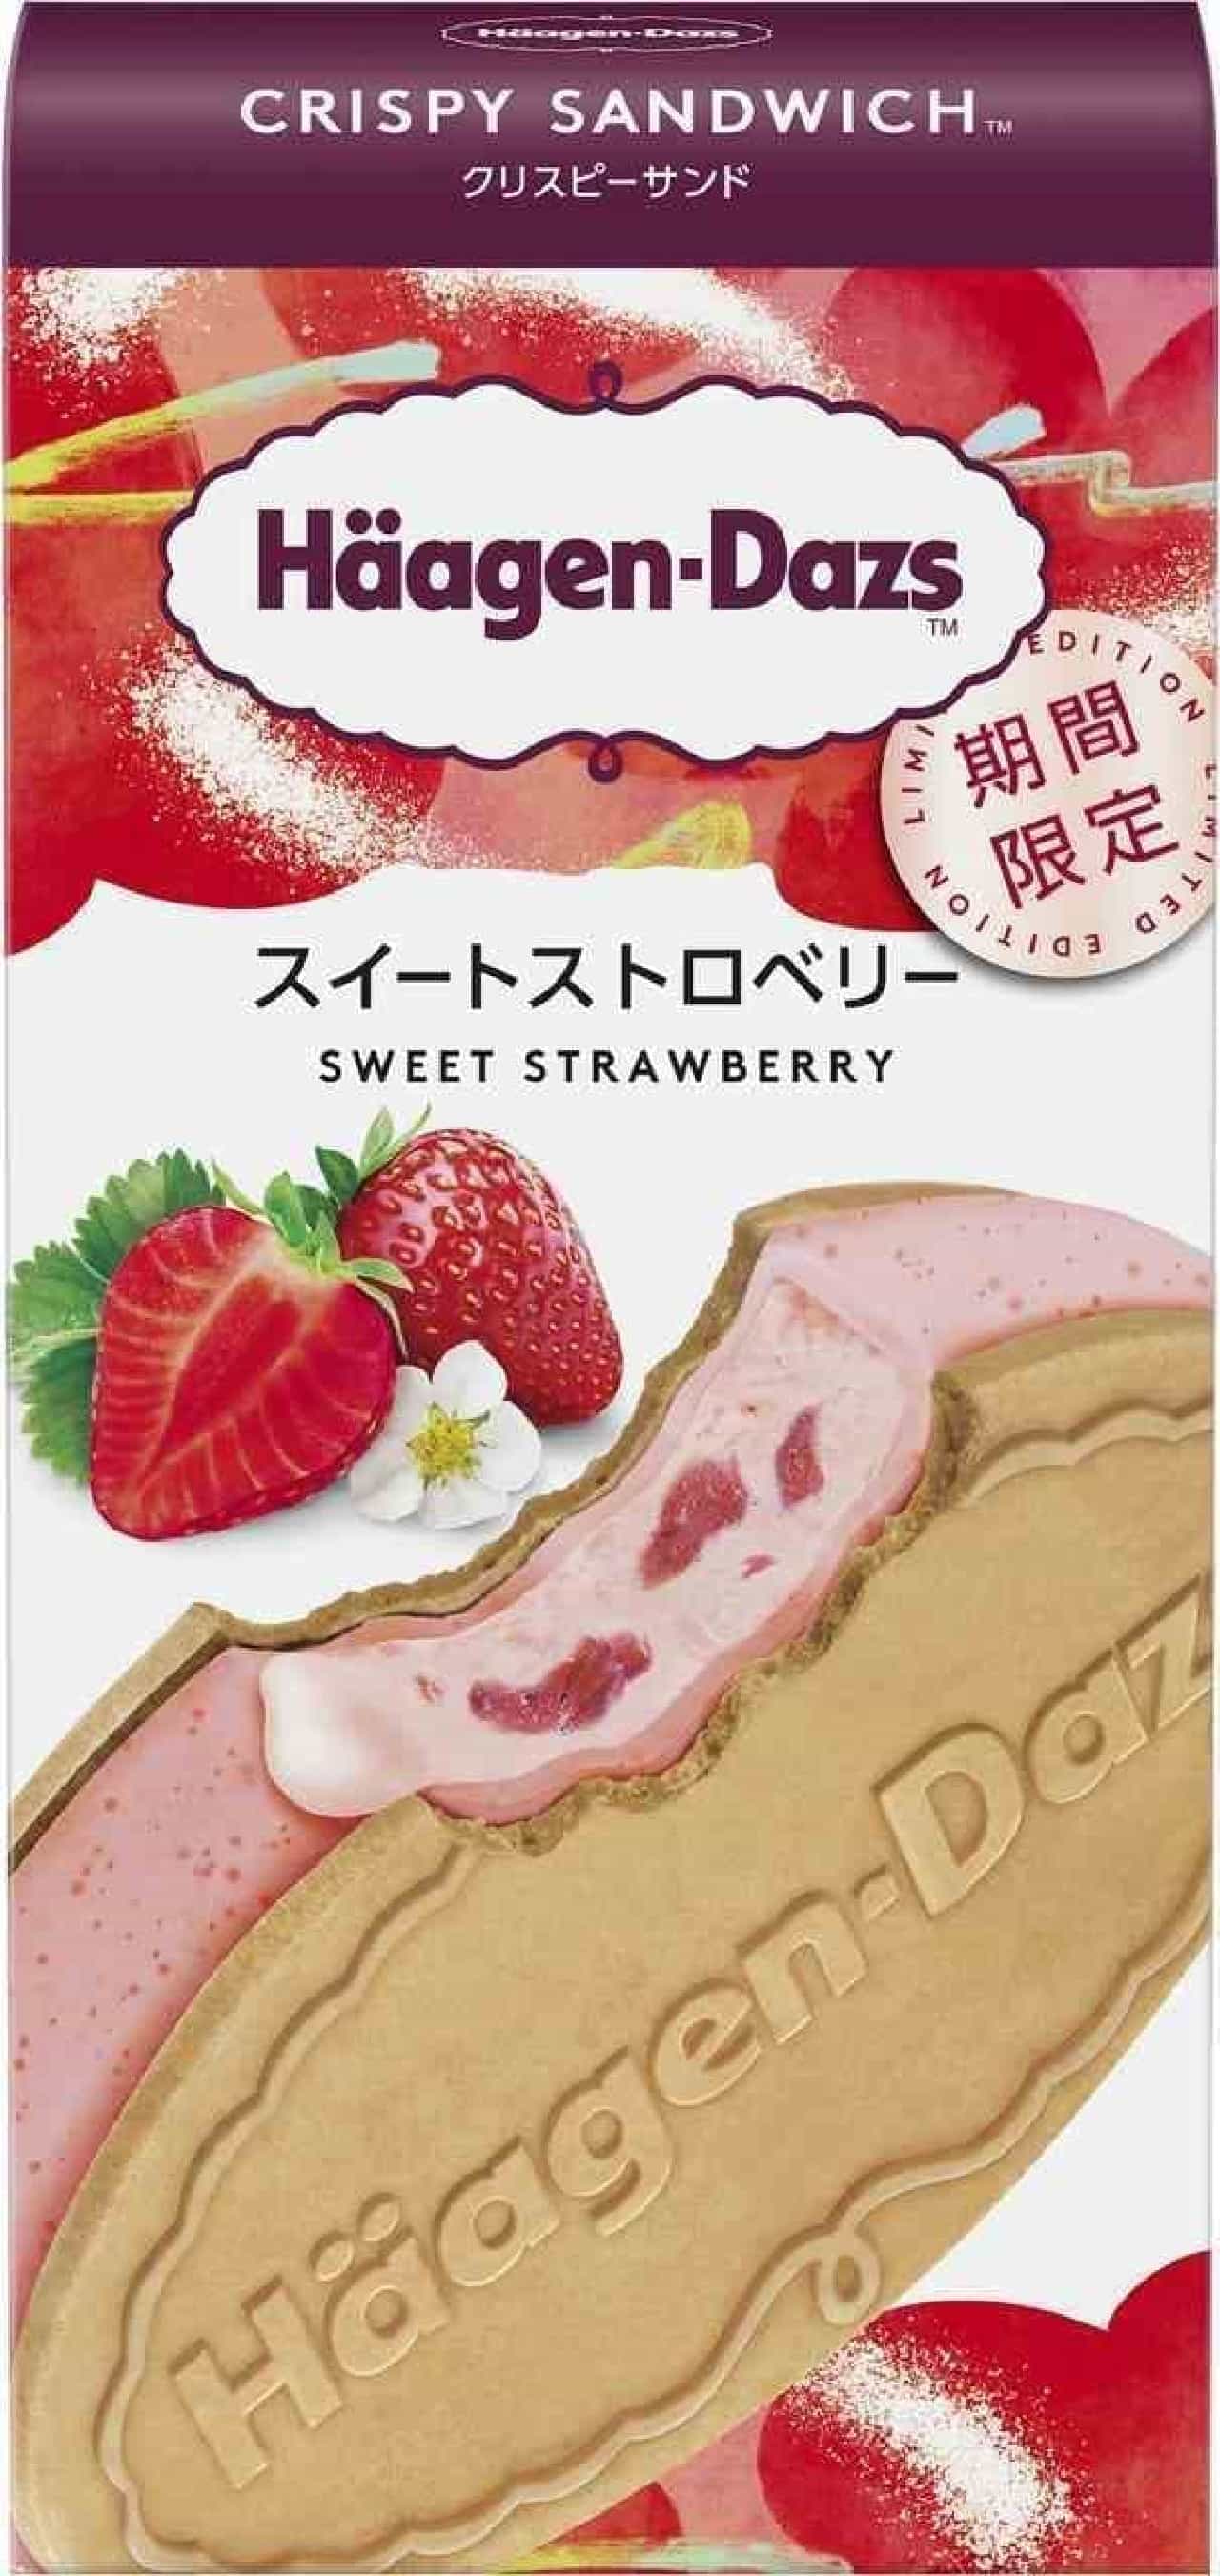 Haagen-Dazs new work "Sweet Strawberry"